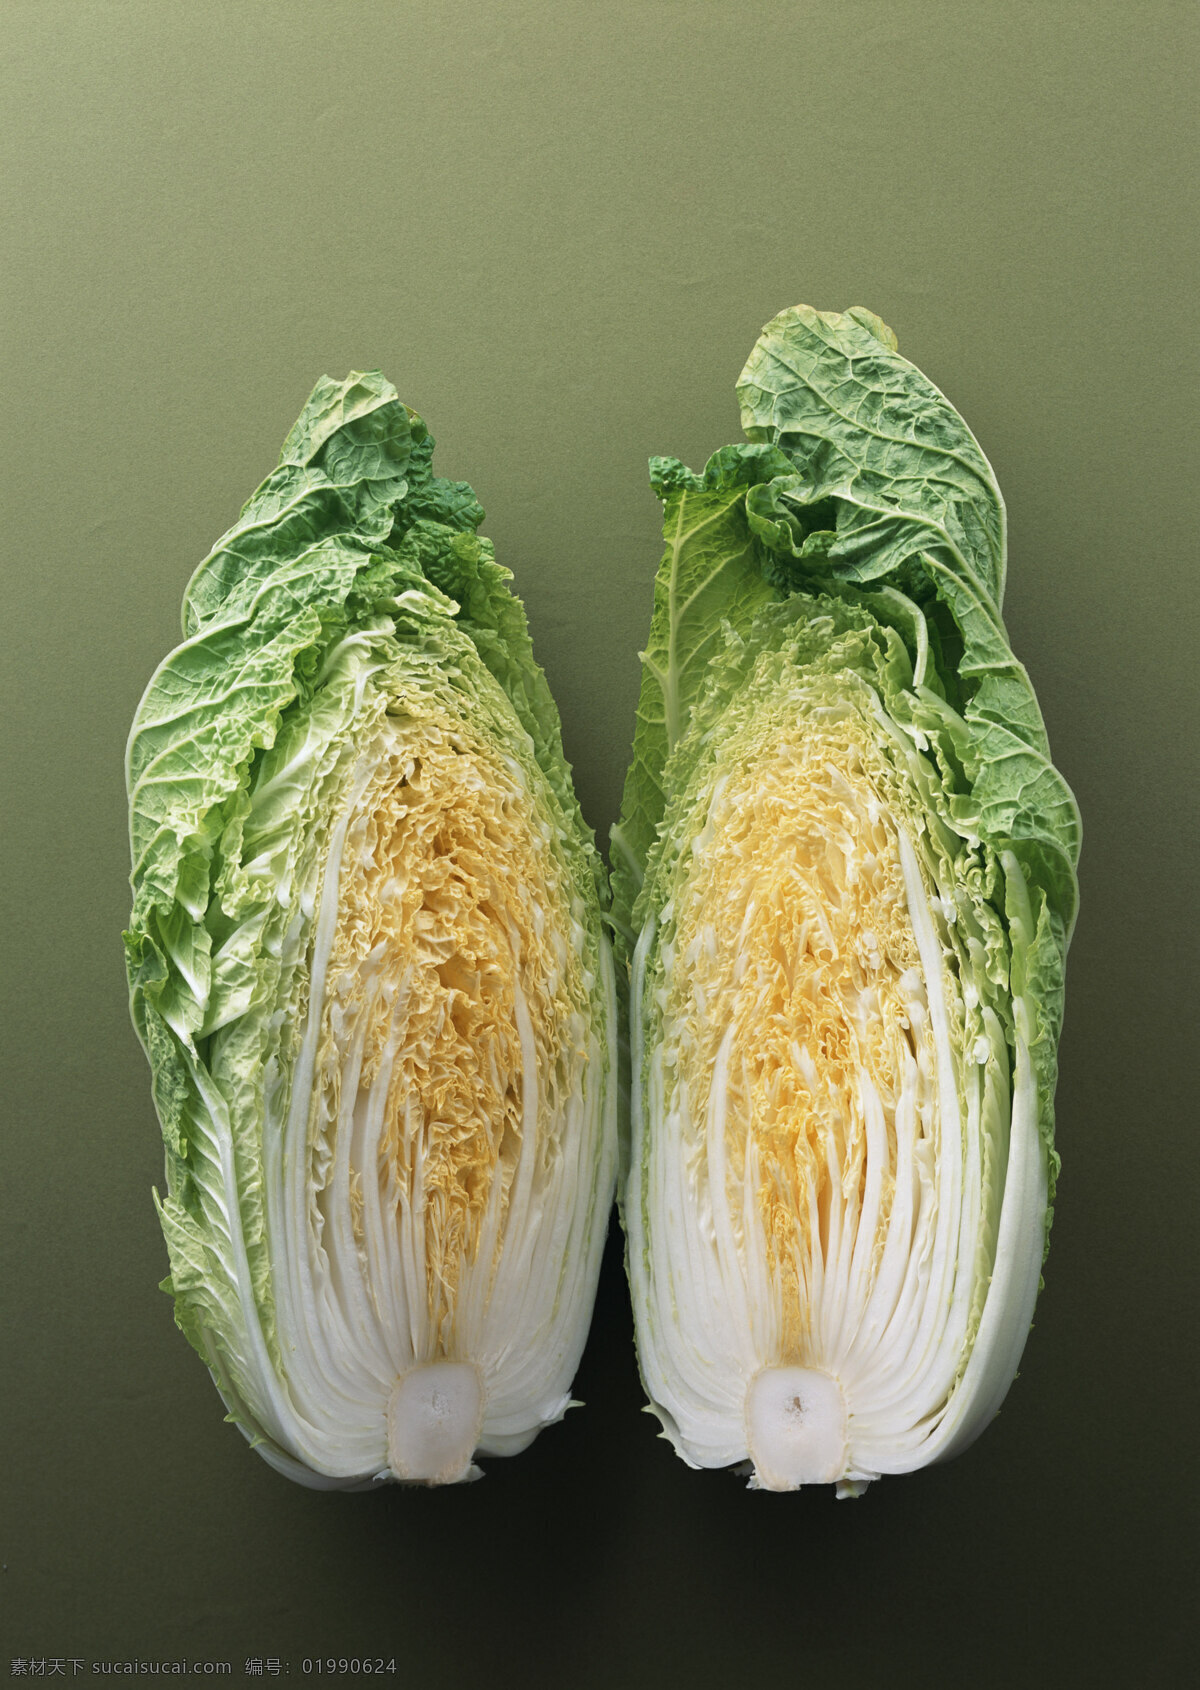 切开 大白菜 新鲜蔬菜 农作物 绿色食品 摄影图 高清图片 蔬菜图片 餐饮美食